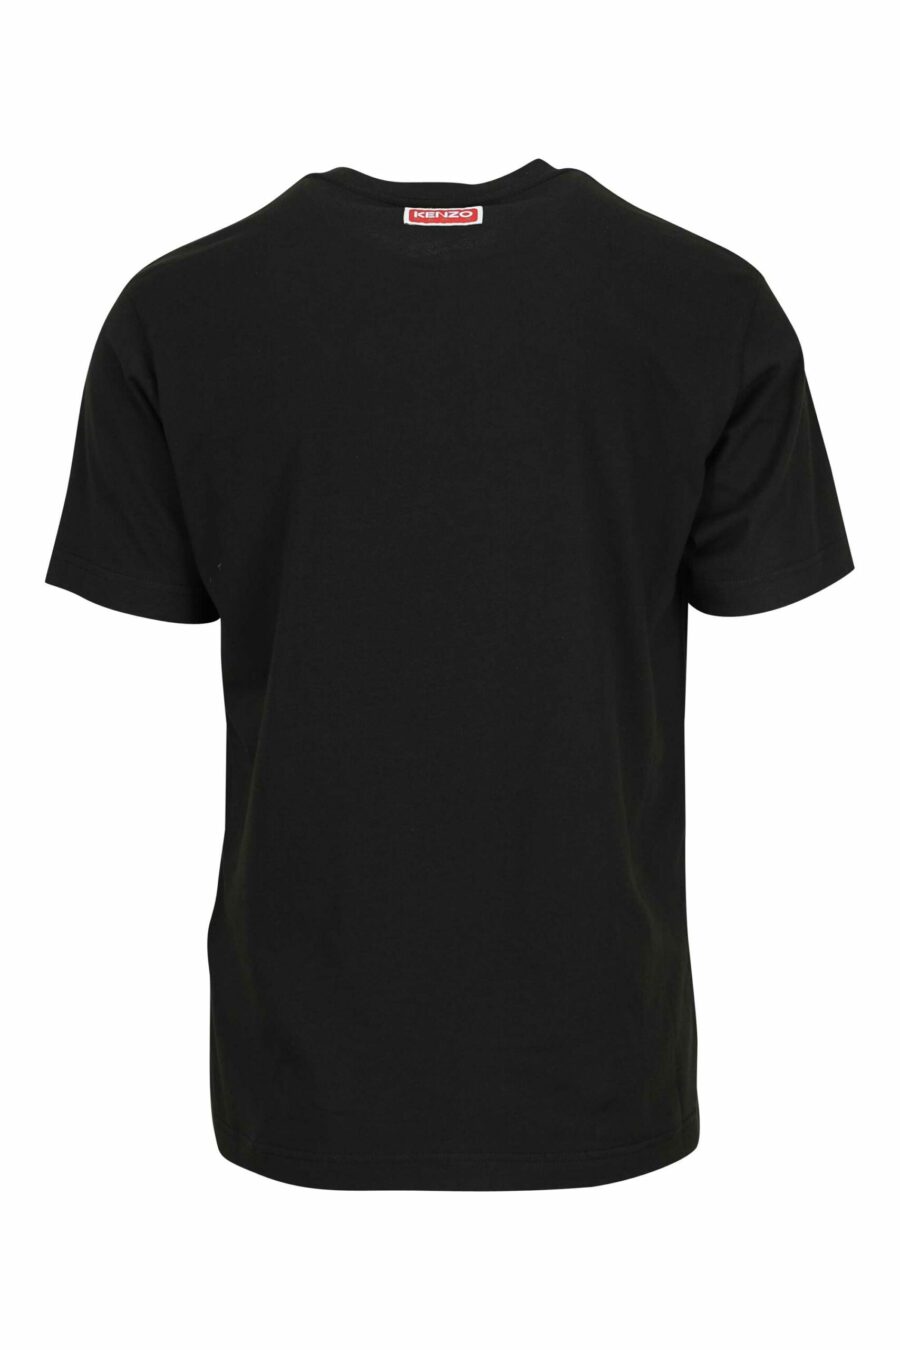 T-shirt preta com maxilogo de tigre multicolorido - 3612230625112 1 scaled